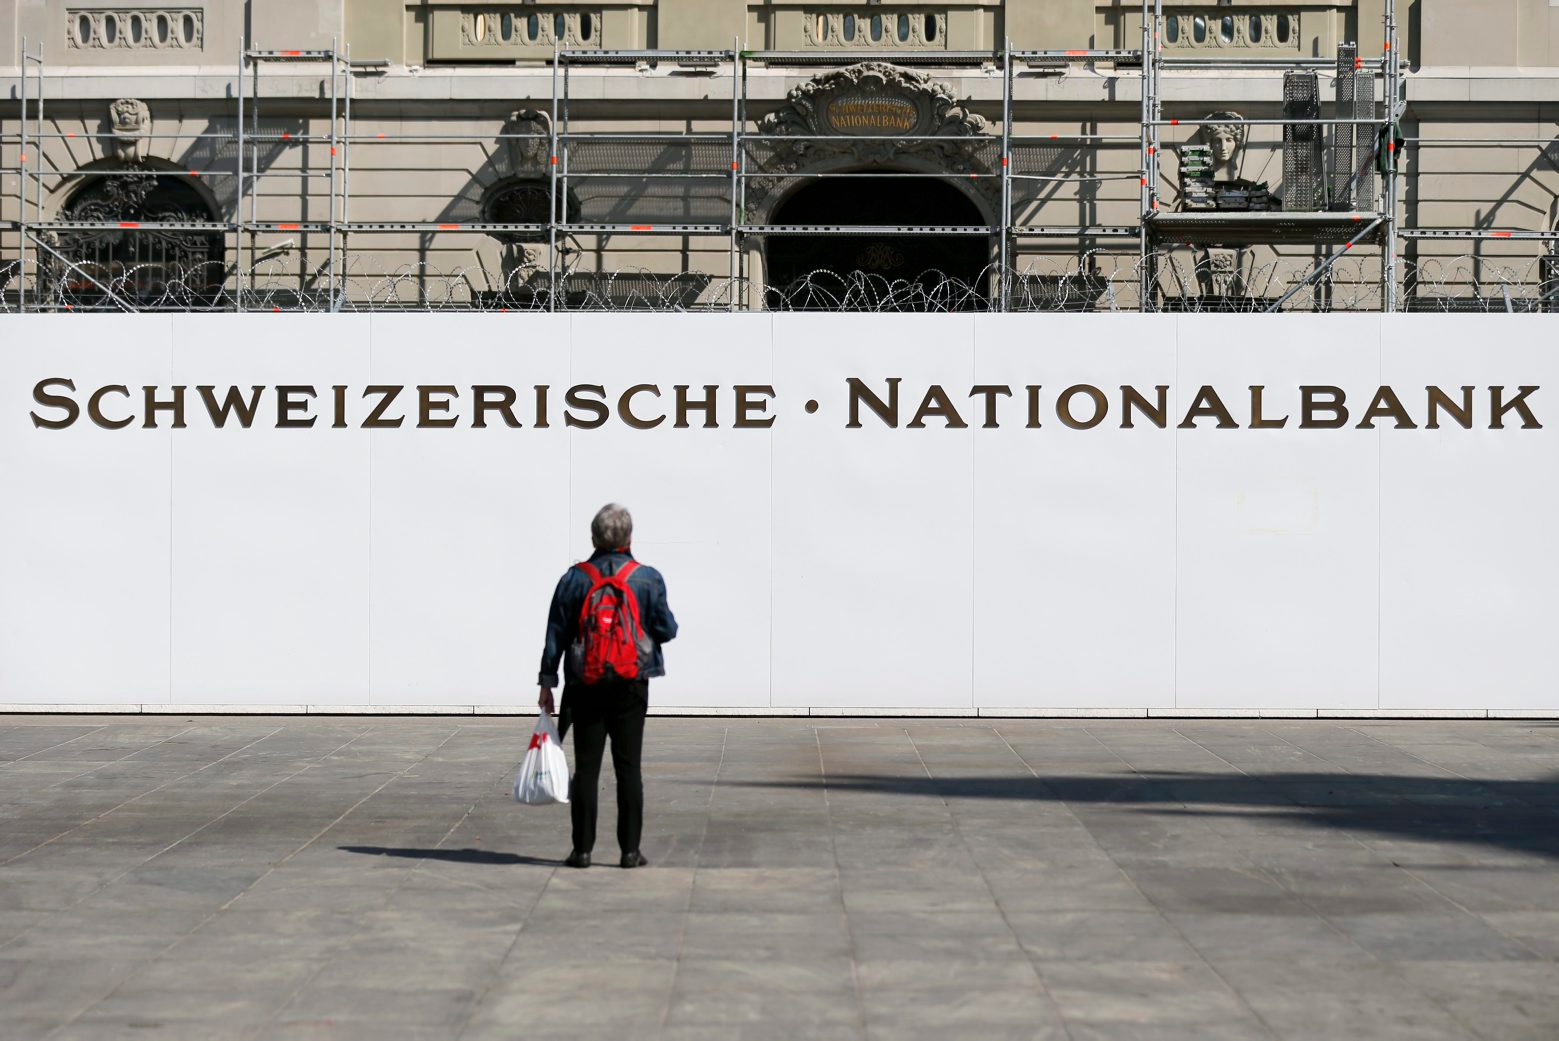 ZUR MEDIENKONFERENZ DES BUNDESRATES UEBER DIE VOLLGELD-INITIATIVE STELLEN WIR IHNEN AM MITTWOCH, 9. NOVEMER 2016, FOLGENDES ARCHIVBILD ZUR VERFUEGUNG - Ein Passant steht vor der Baustelle vor der Schweizerischen Nationalbank, am Mittwoch, 9. September 2015, auf dem Bundesplatz in Bern. (KEYSTONE/Peter Klaunzer) SCHWEIZ BUNDESRAT VOLLGELD-INITIATIVE